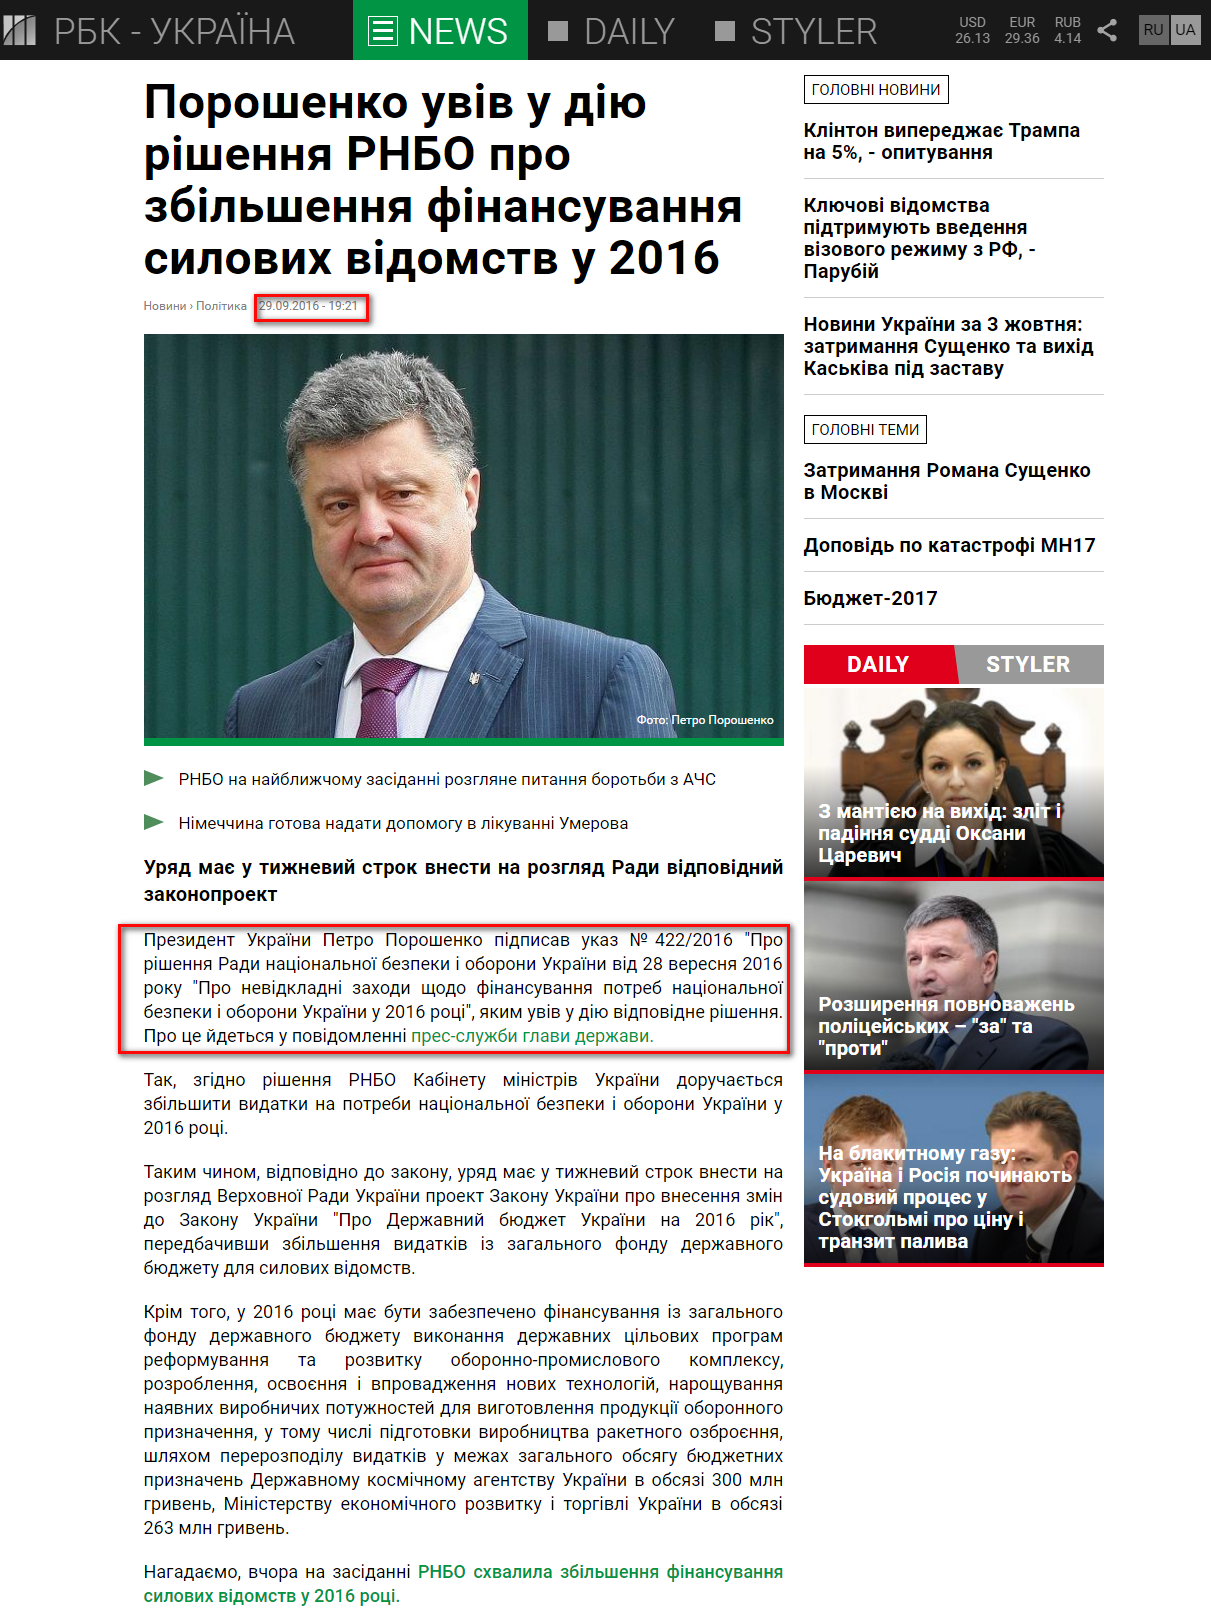 https://www.rbc.ua/ukr/news/poroshenko-vvel-deystvie-reshenie-snbo-uvelichenii-1475166046.html